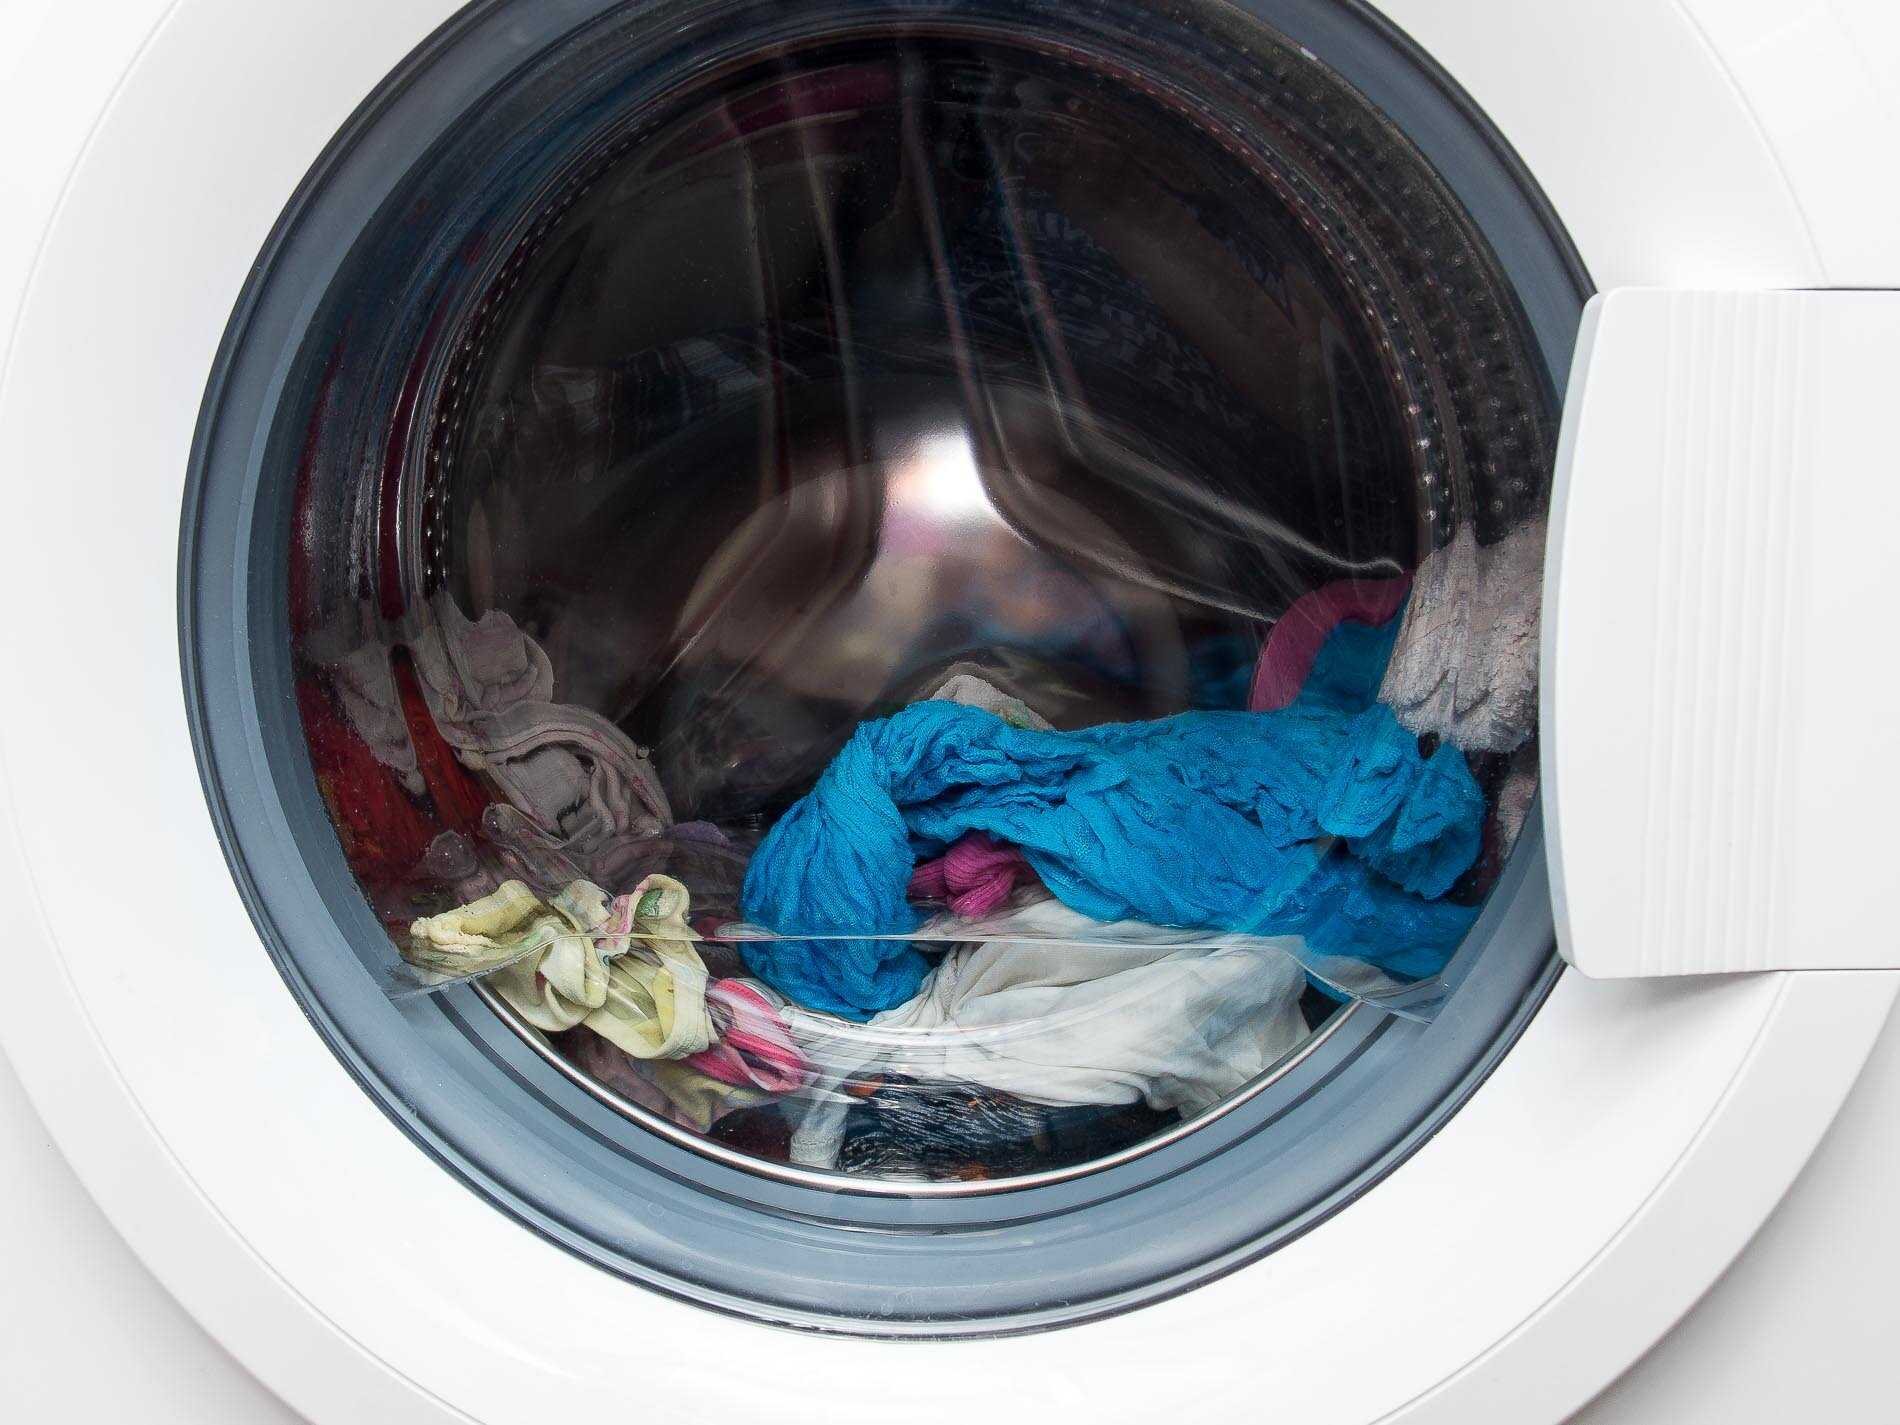 Причины, почему стиральная машина не отжимает белье